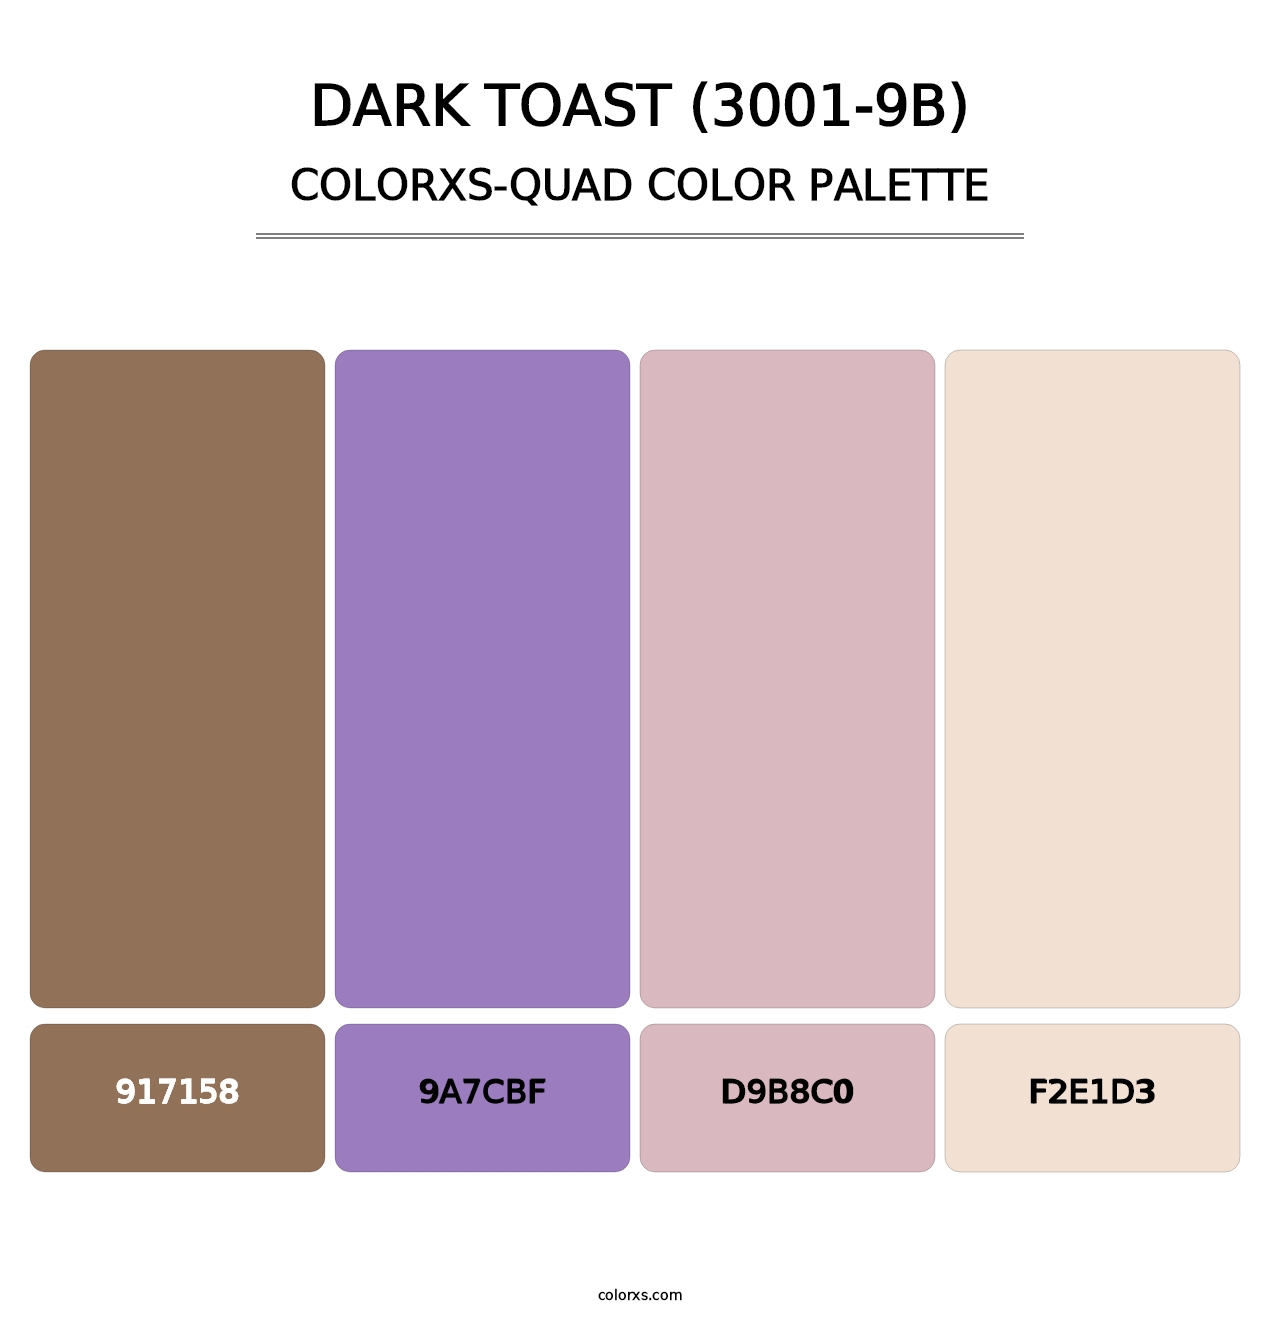 Dark Toast (3001-9B) - Colorxs Quad Palette